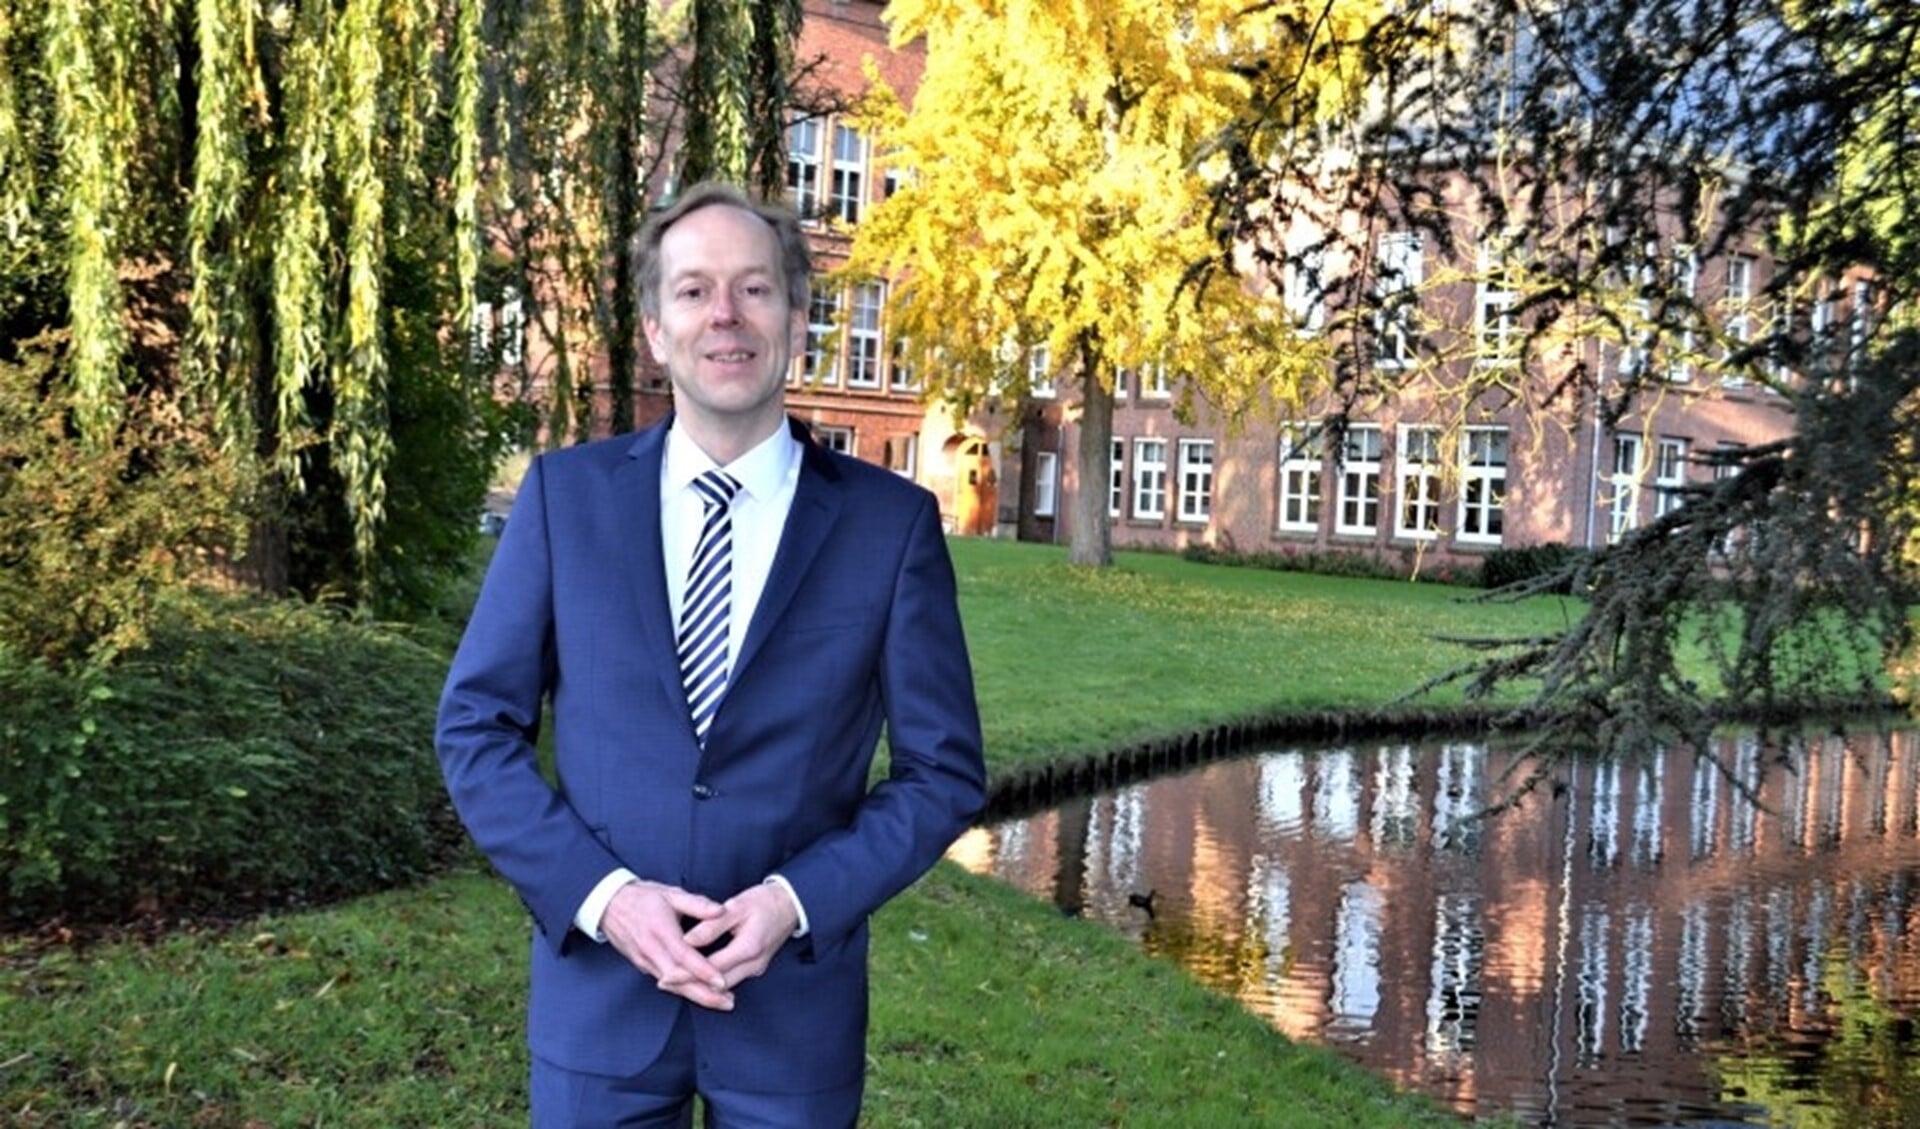 Wethouder financiën, Jan-Willem Rouwendal verwacht dat de komende jaren er financieel somberder uit gaan zien.  